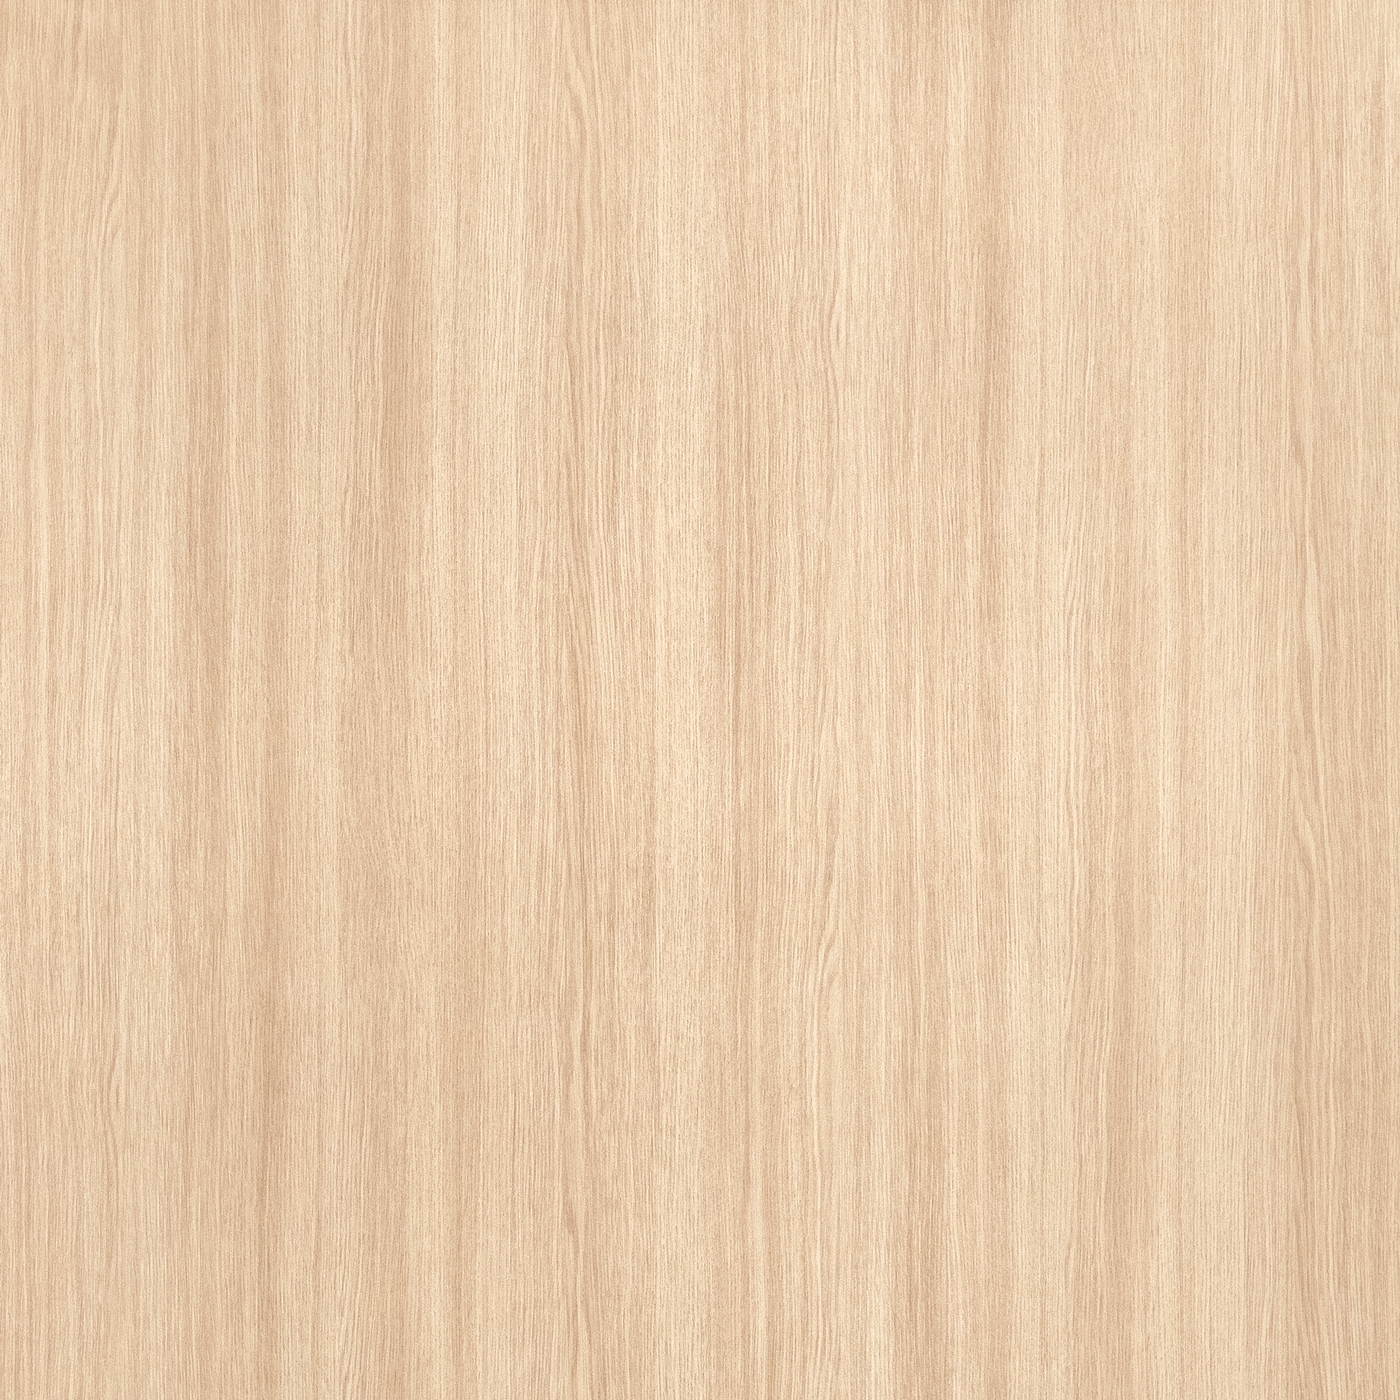 Meiko Lumiart Woodgrain -LH 2880 F-Sable Oak